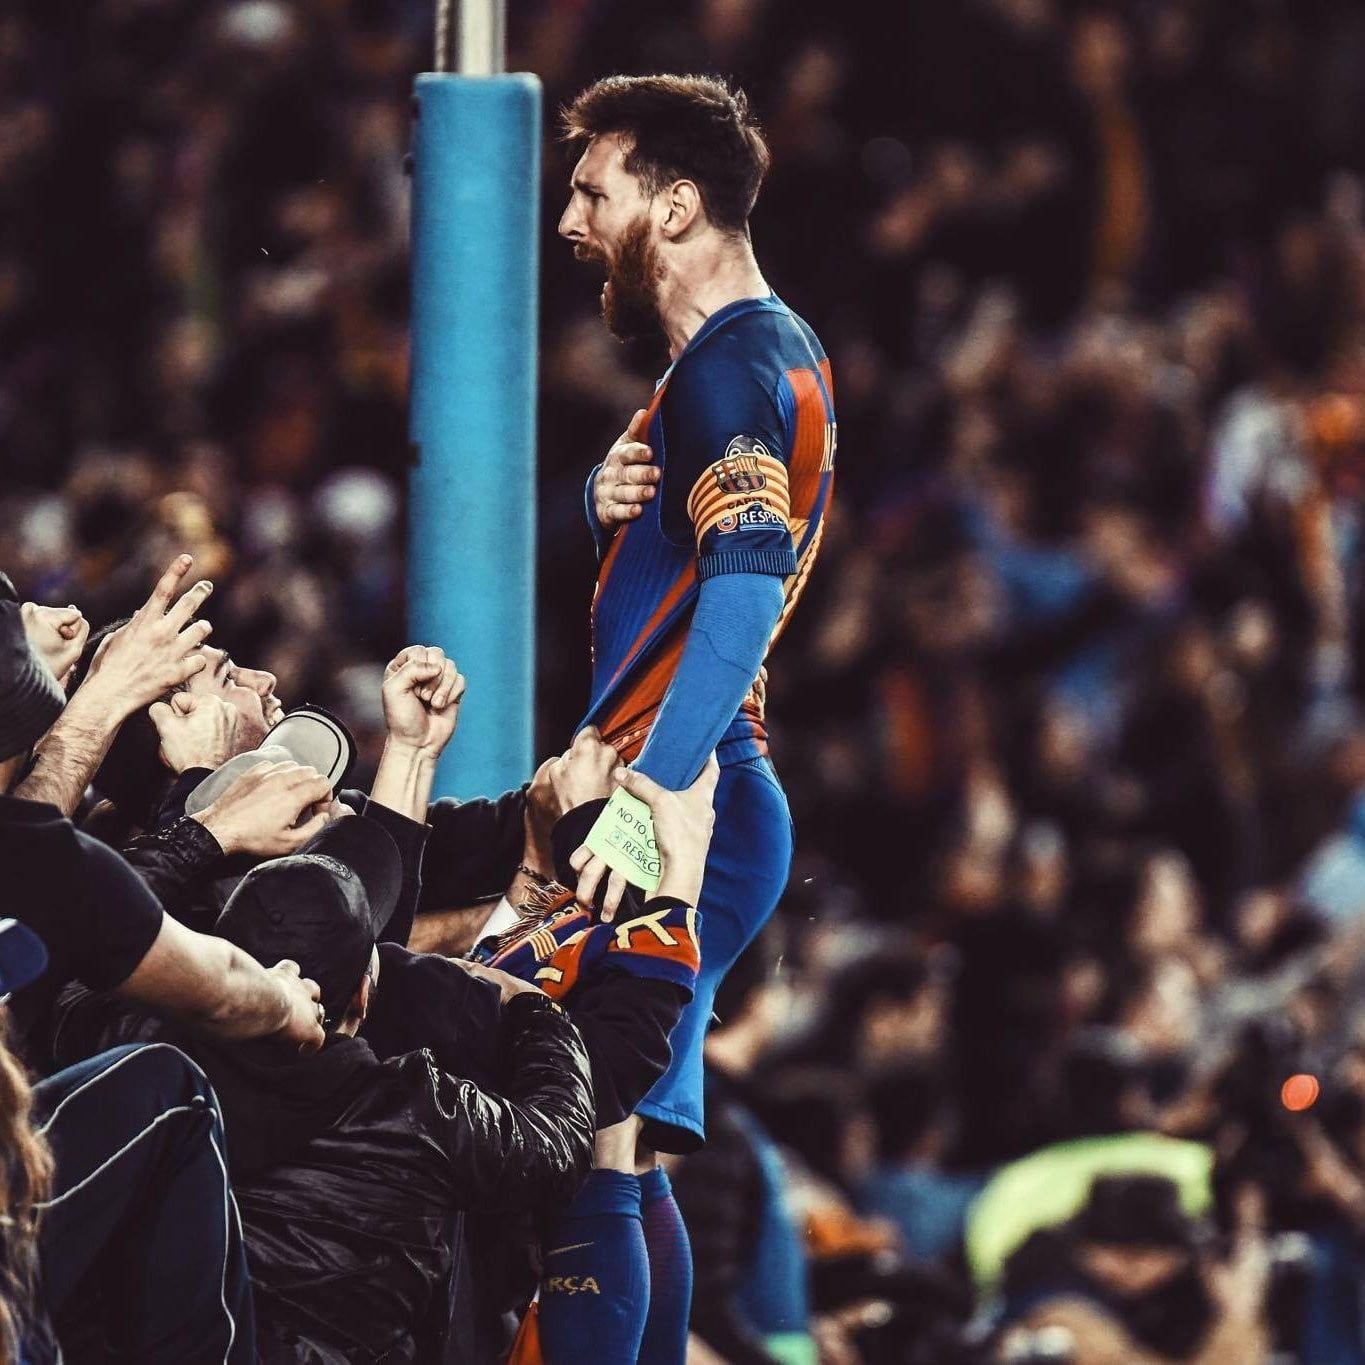 Hãy ngắm nhìn hình nền ấn tượng về sự kiện Messi ăn mừng trong các trận đấu. Cùng cảm nhận lại niềm vui khi chứng kiến siêu sao bóng đá này trong trạng thái cao hứng nhất của mình. Những bức ảnh tuyệt đẹp sẽ khiến bạn yêu thích Messi hơn nữa!